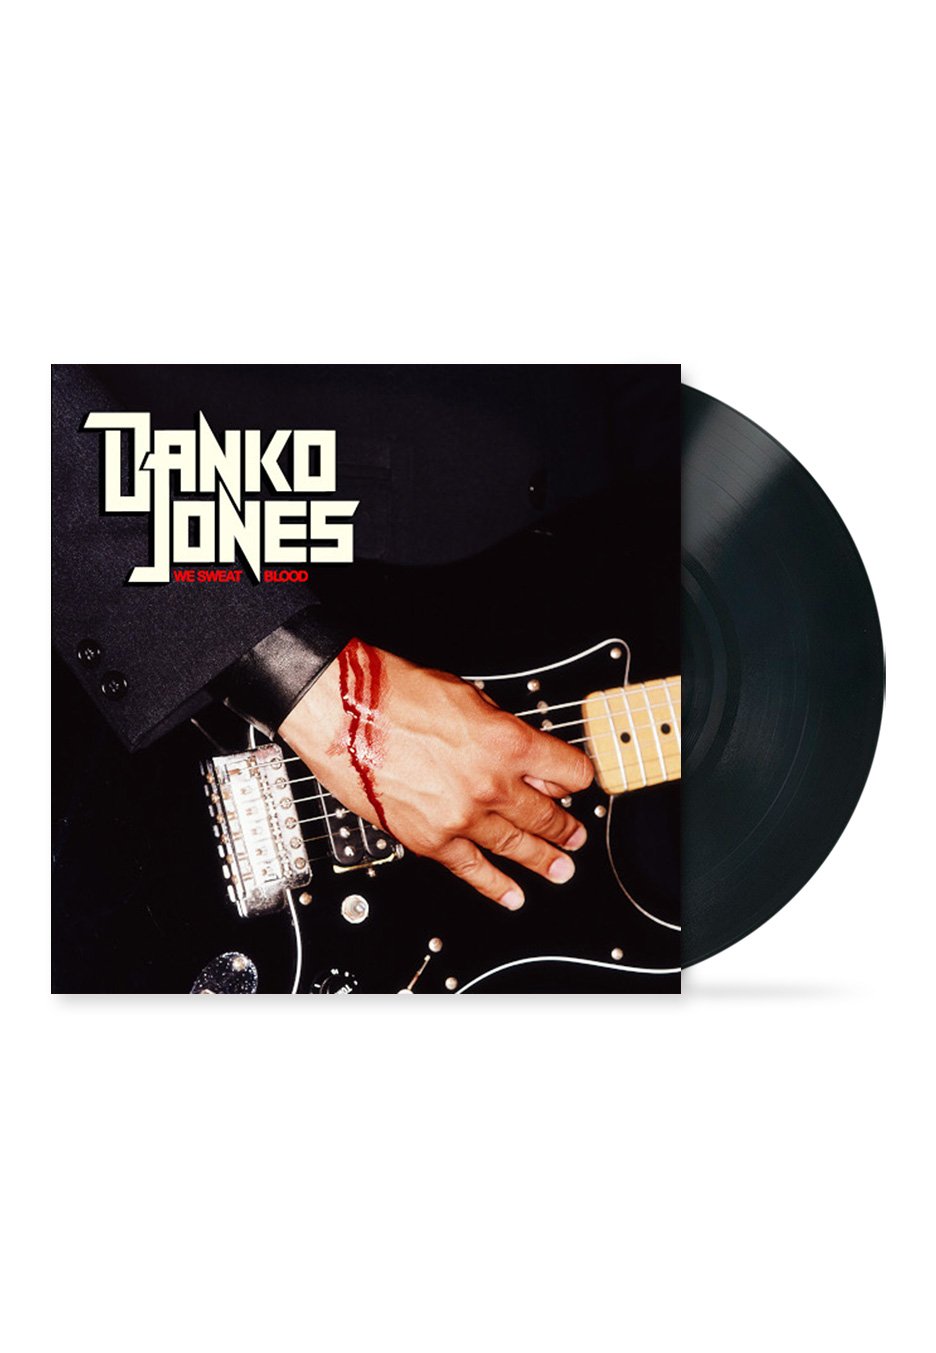 Danko Jones - We Sweat Blood - Vinyl